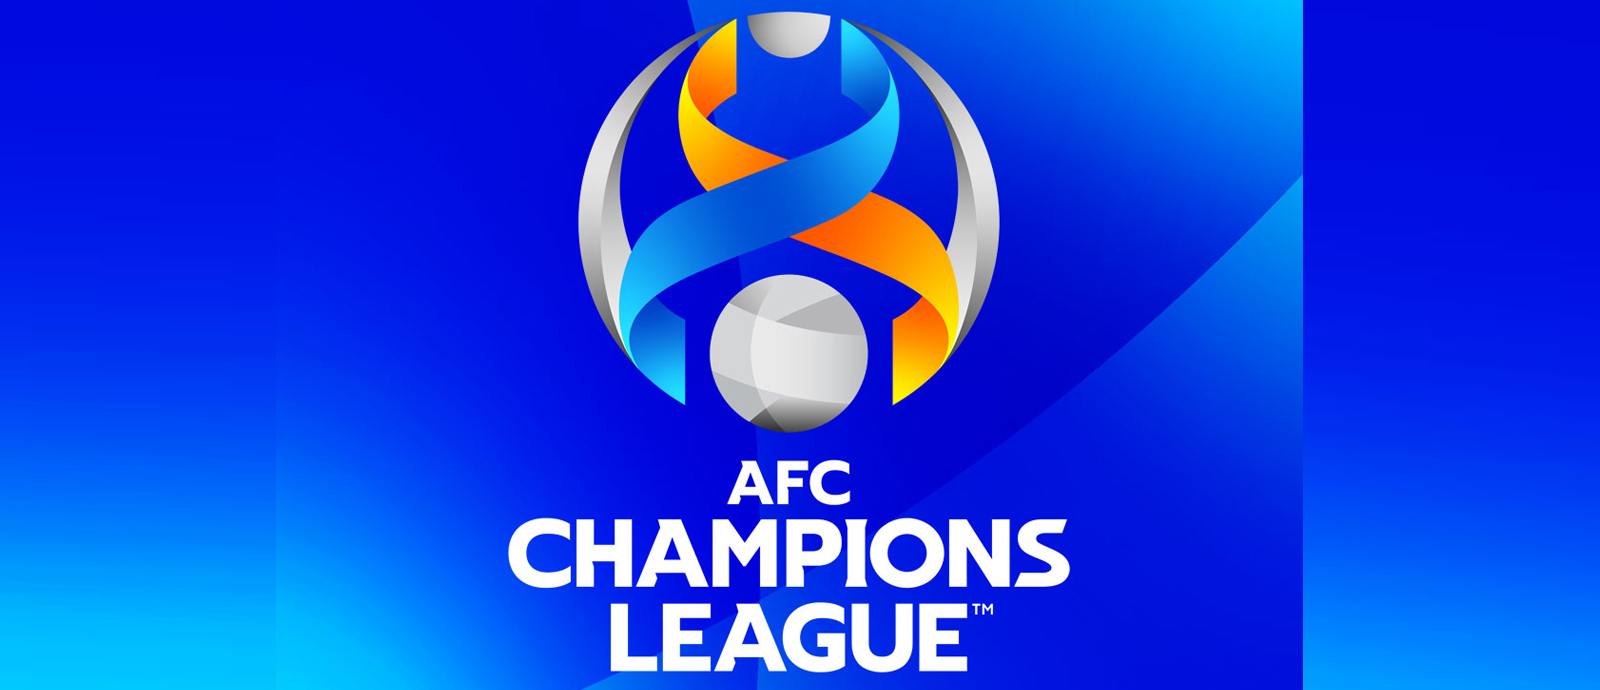  AFC Champions League